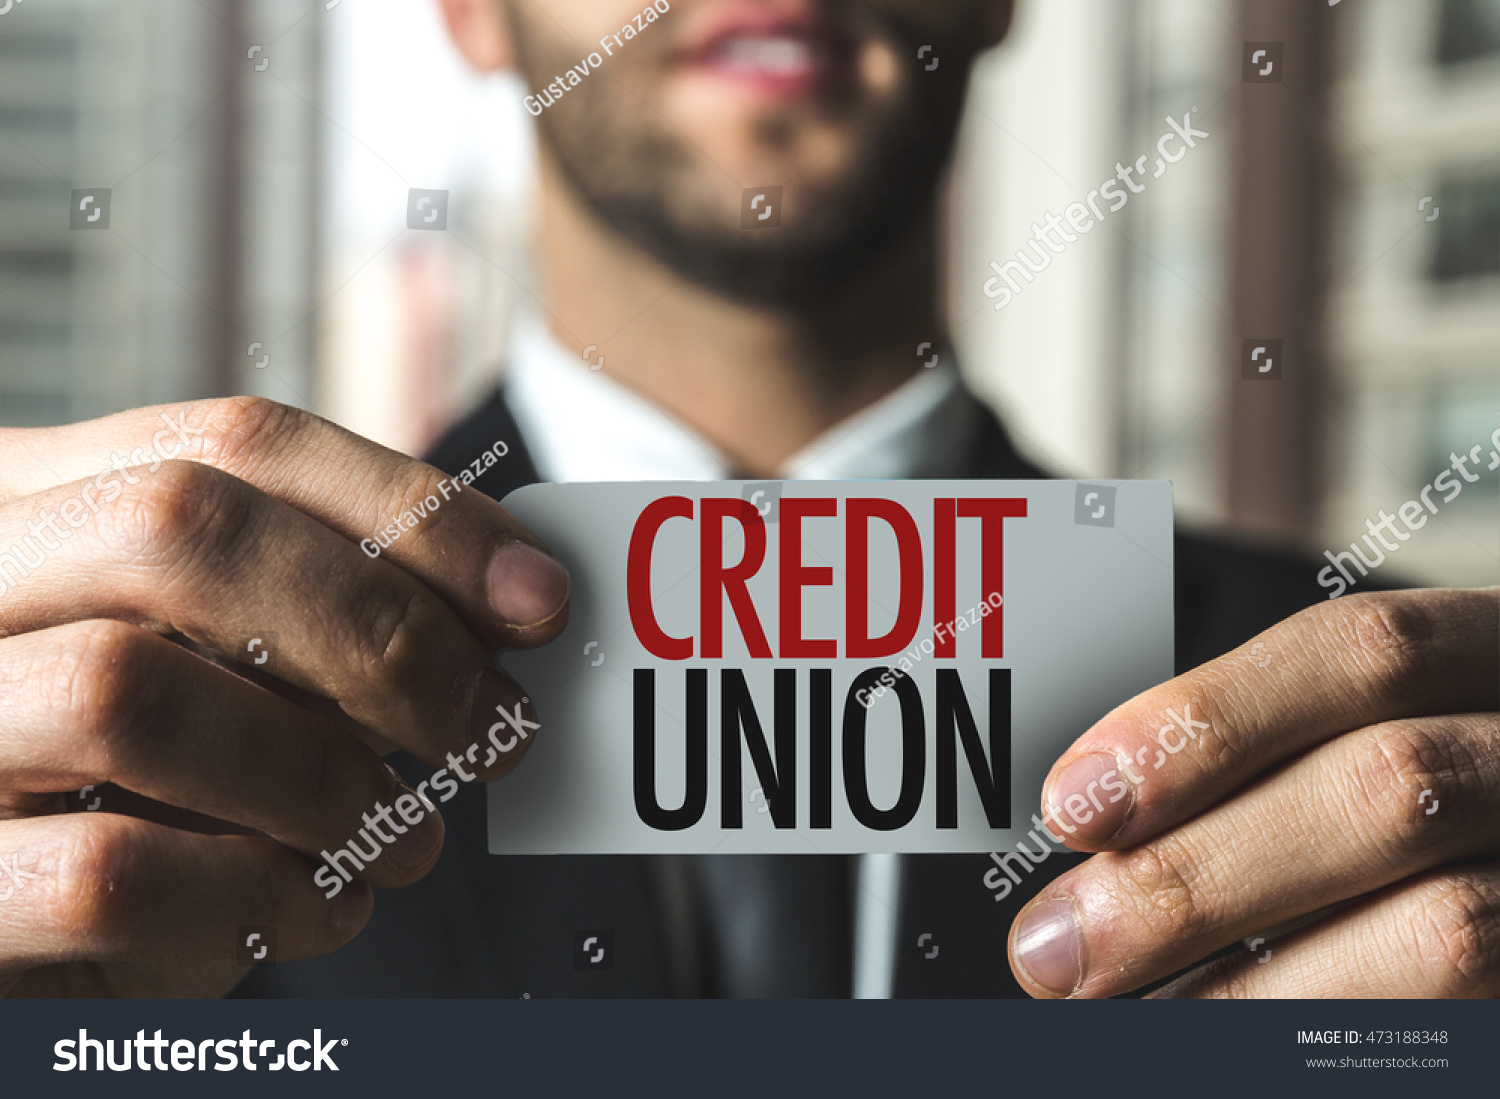 Credit Union #473188348